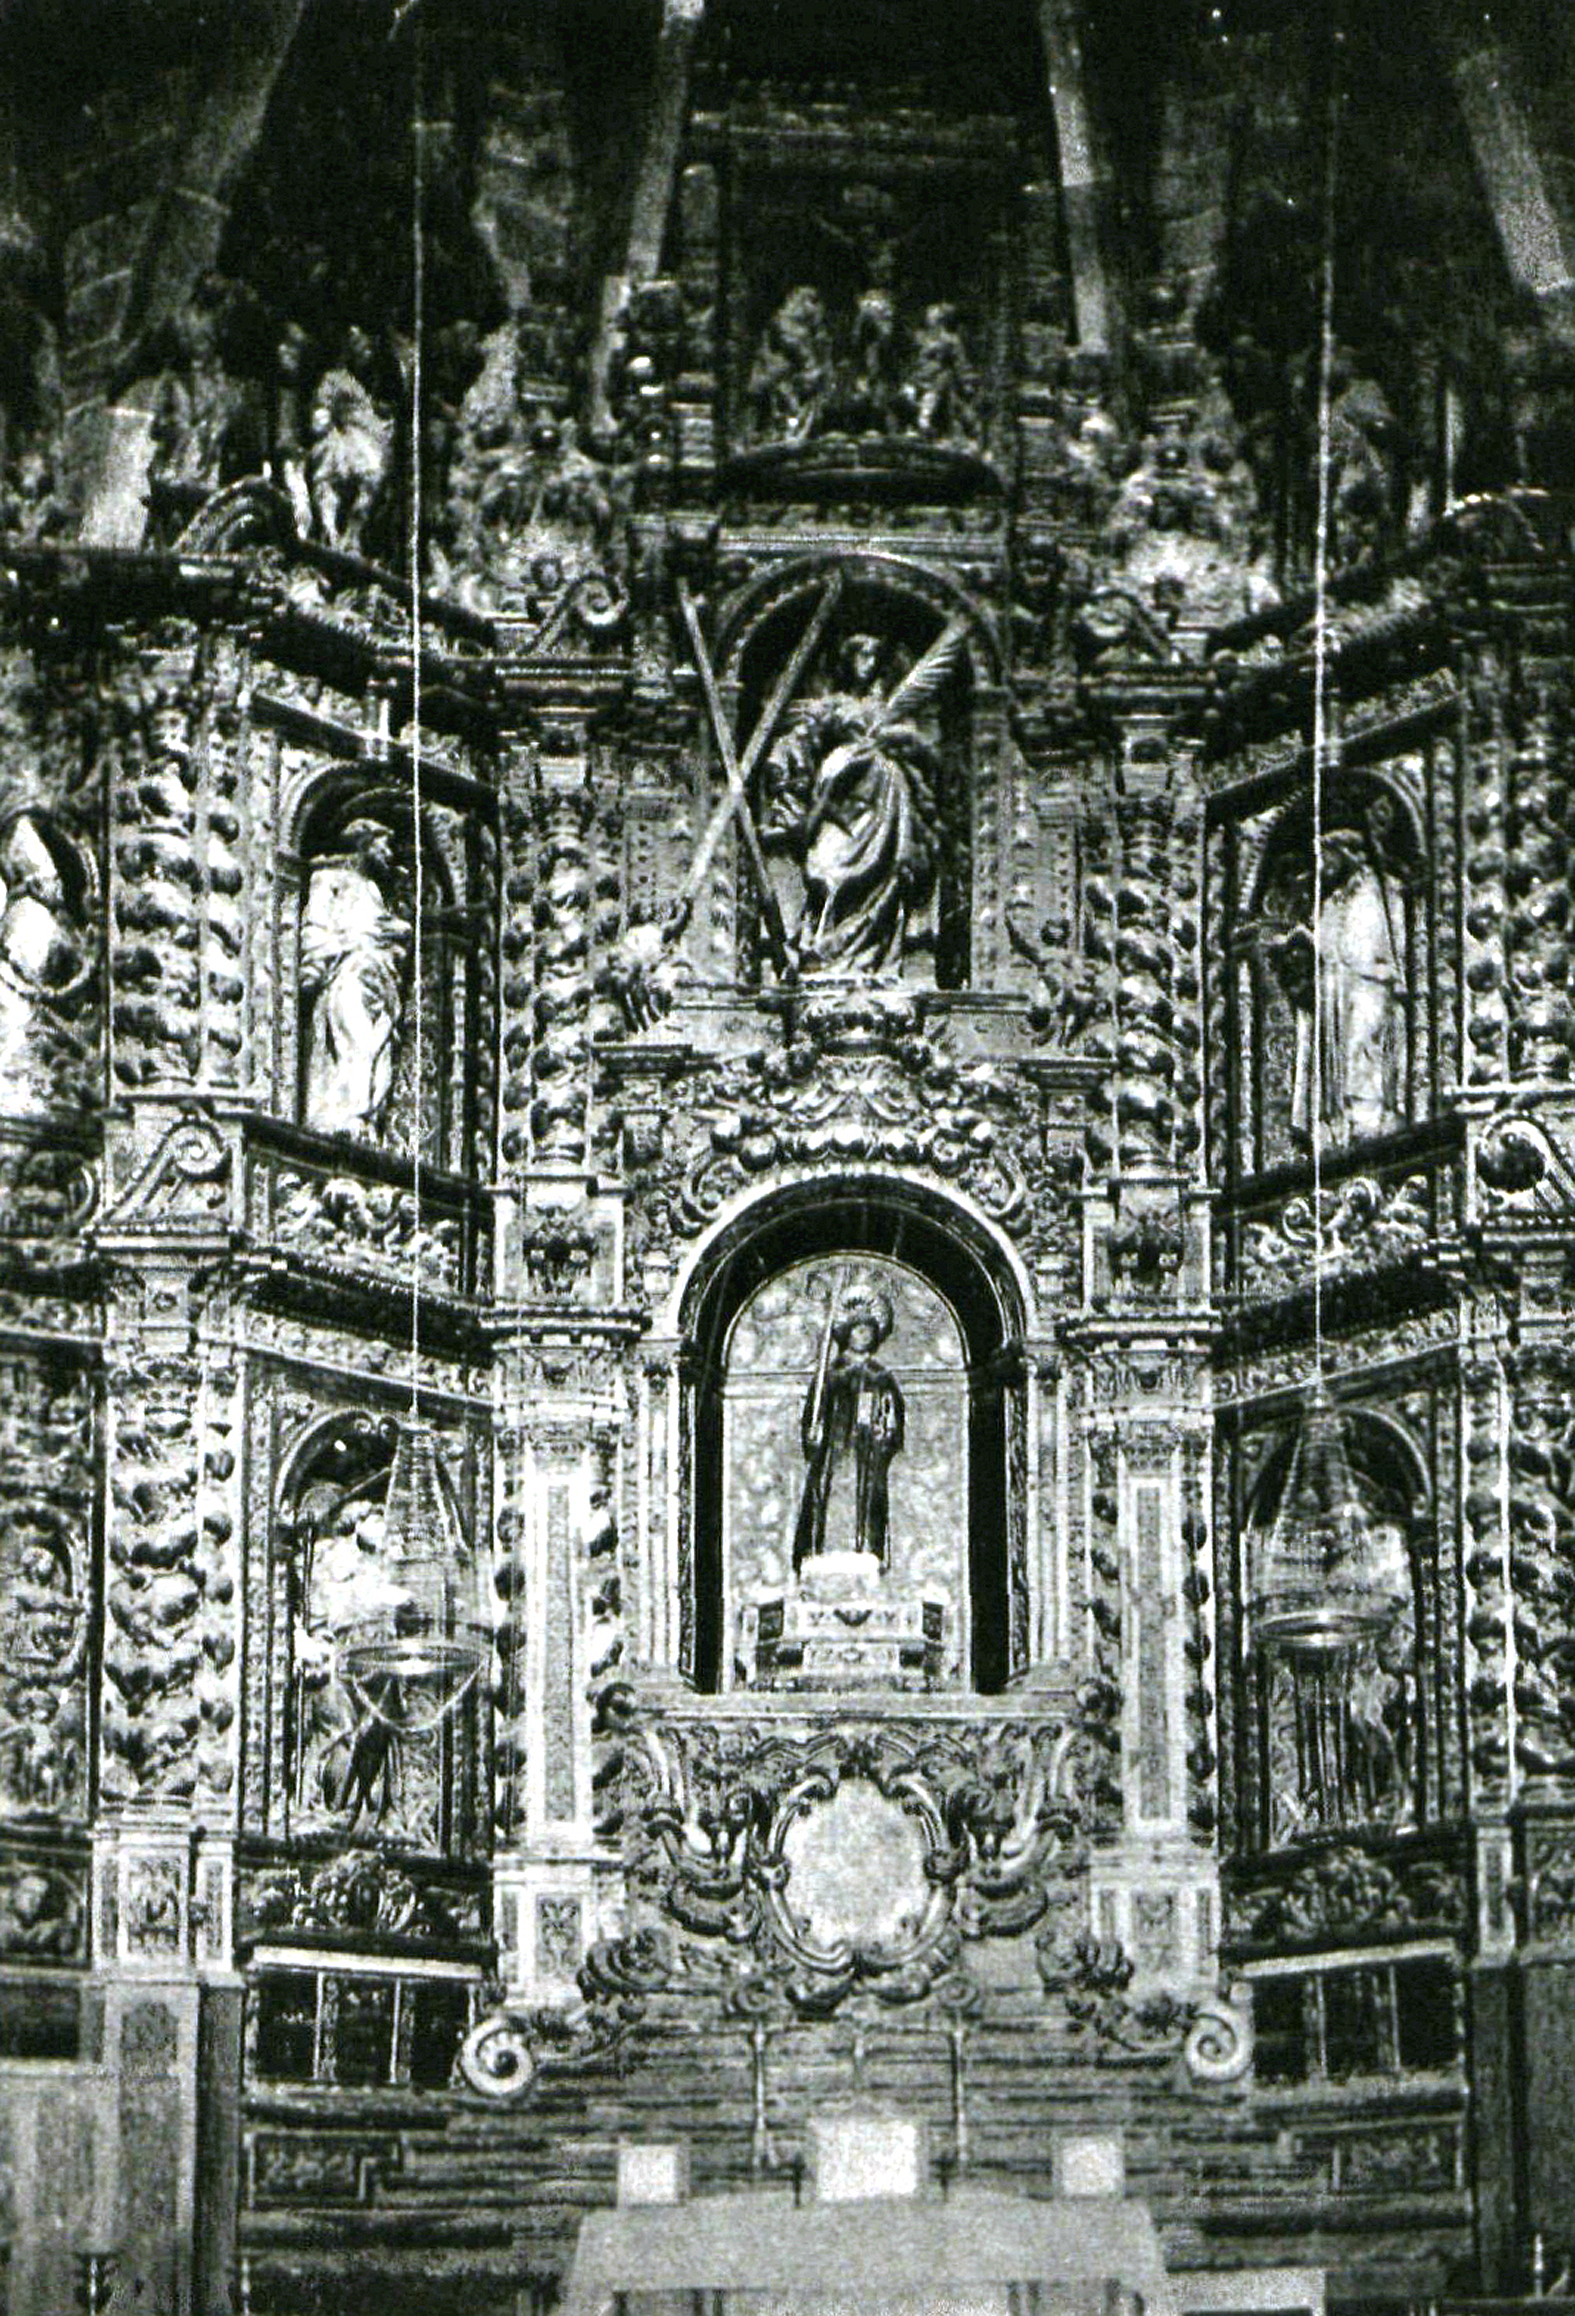 El retaule barroc, comprat a la Mercè de Barcelona, va estar a l’església de Granollers des de 1775 fins a 1890